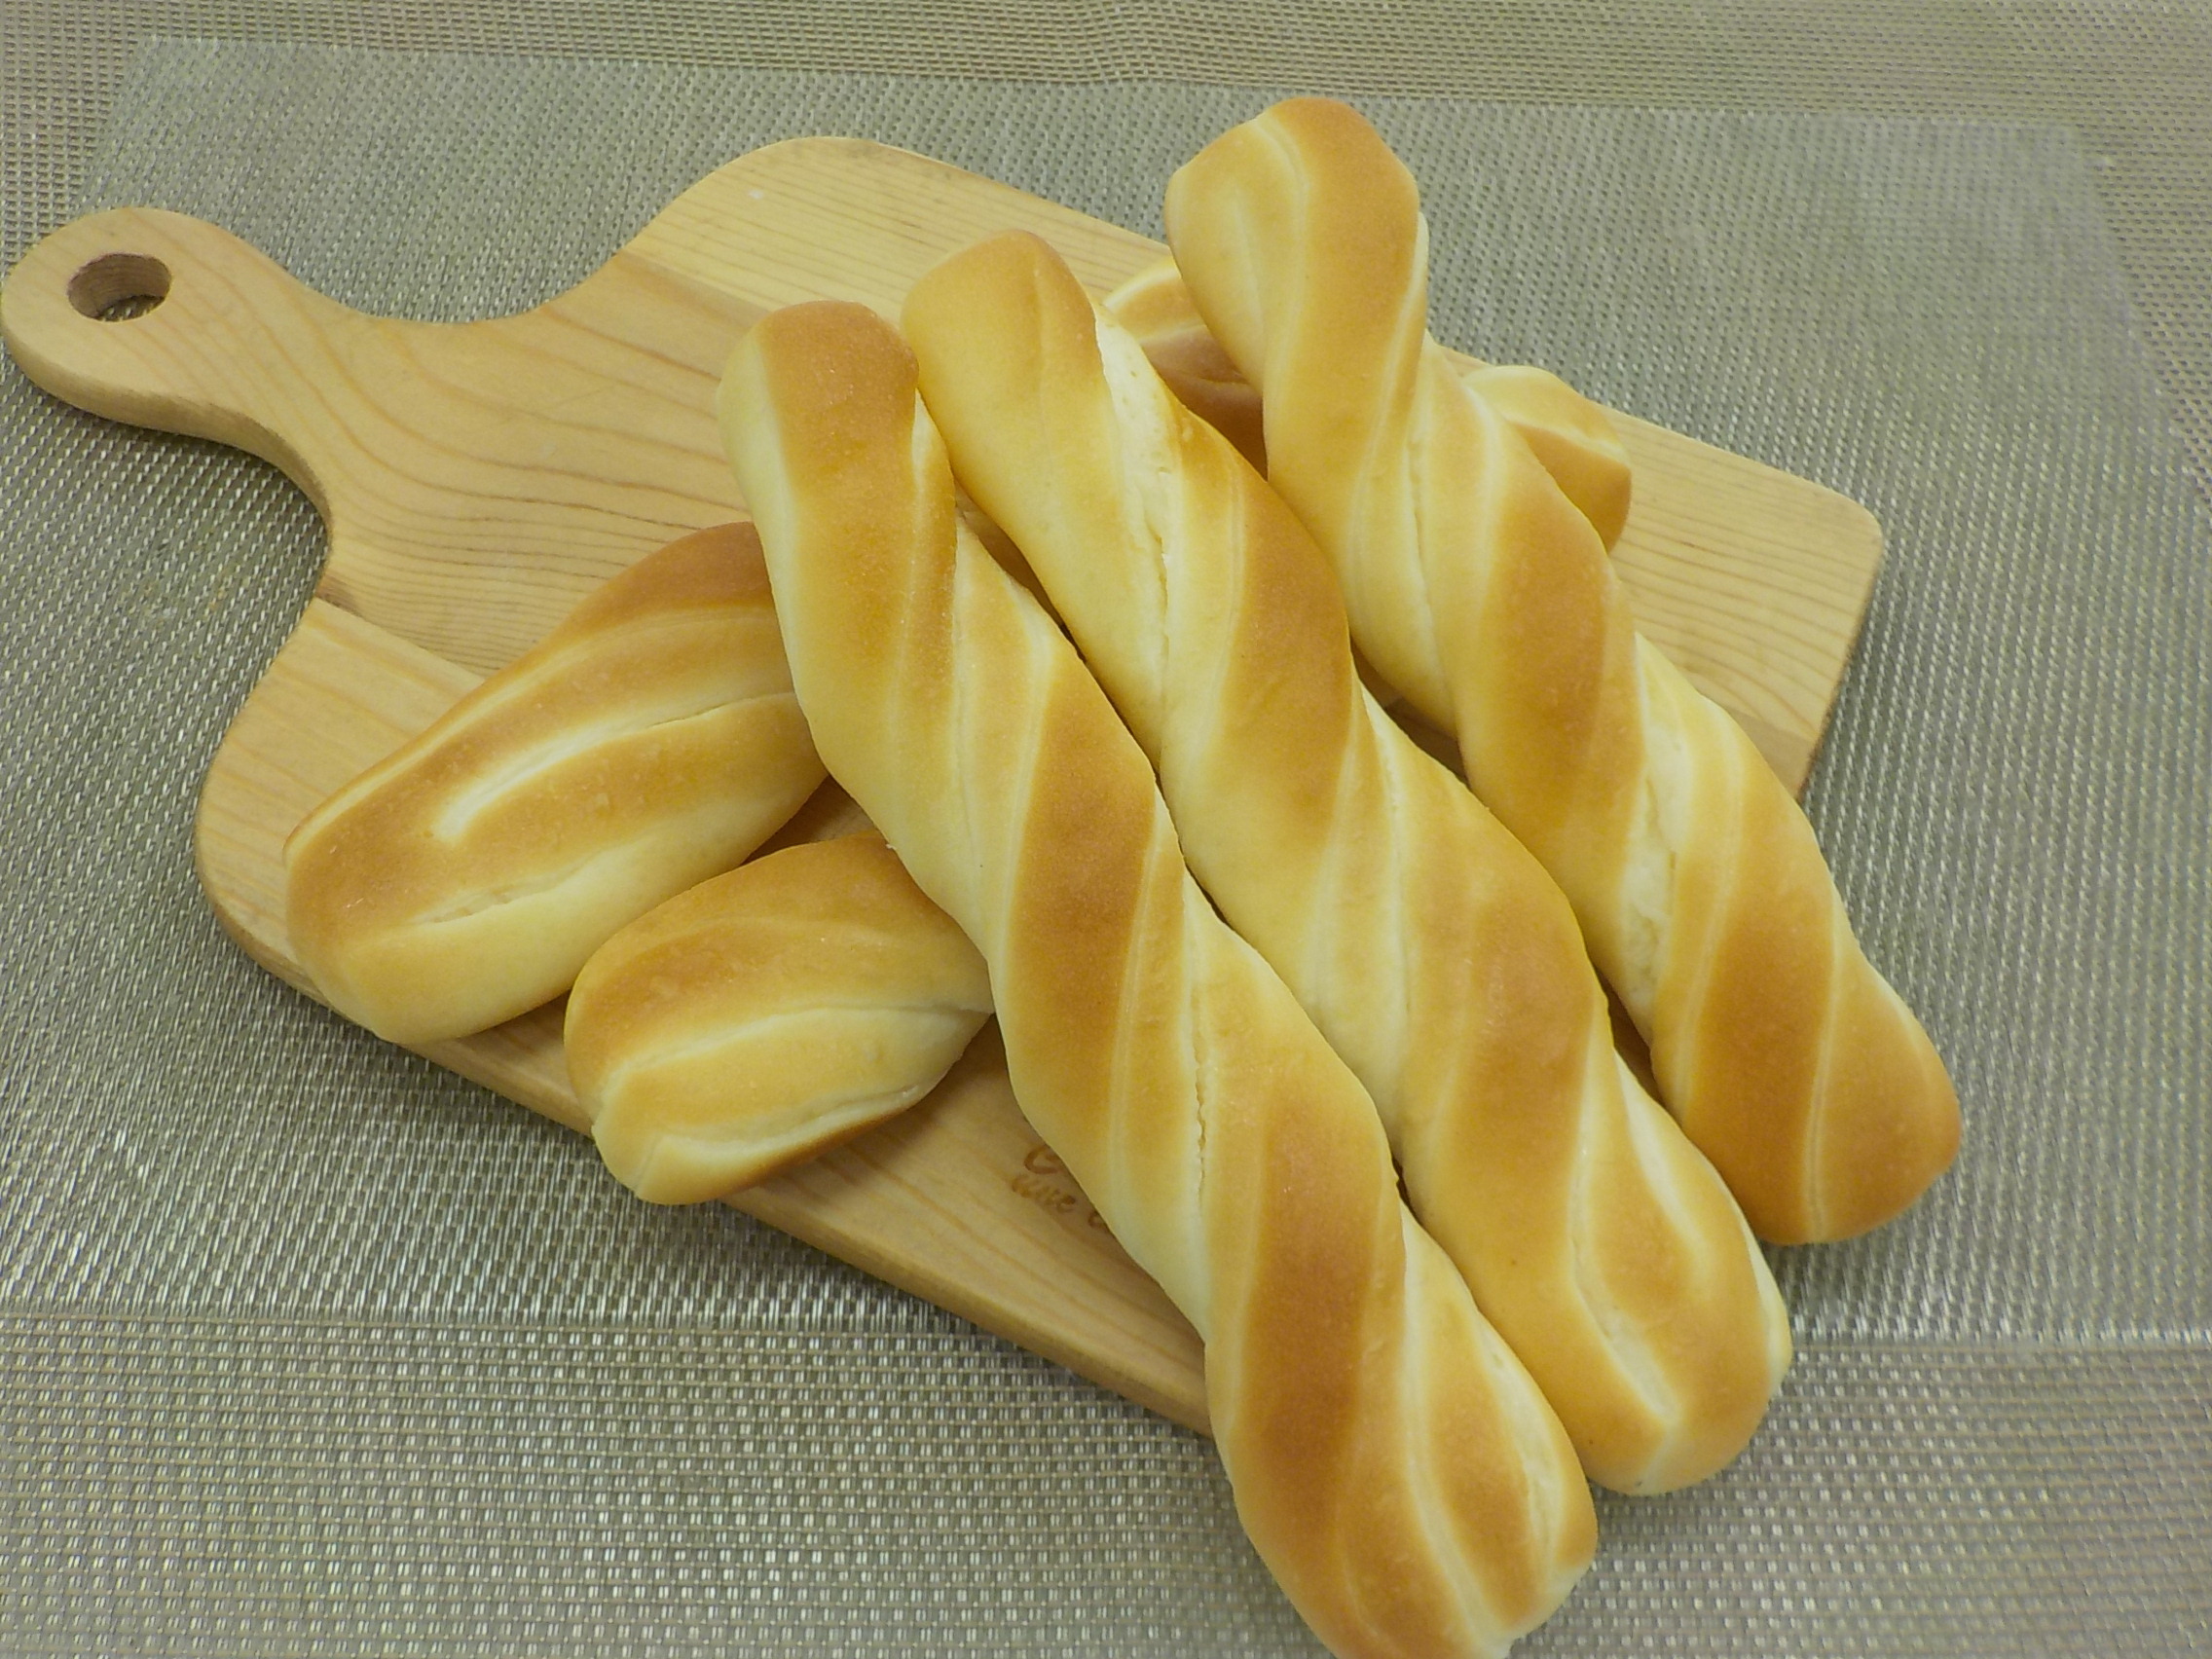 発酵する食物繊維「イヌリア(R)」配合　
日本人に不足しがちな食物繊維をパンで手軽に補う
「ファブリアシートミルク」6月22日新発売